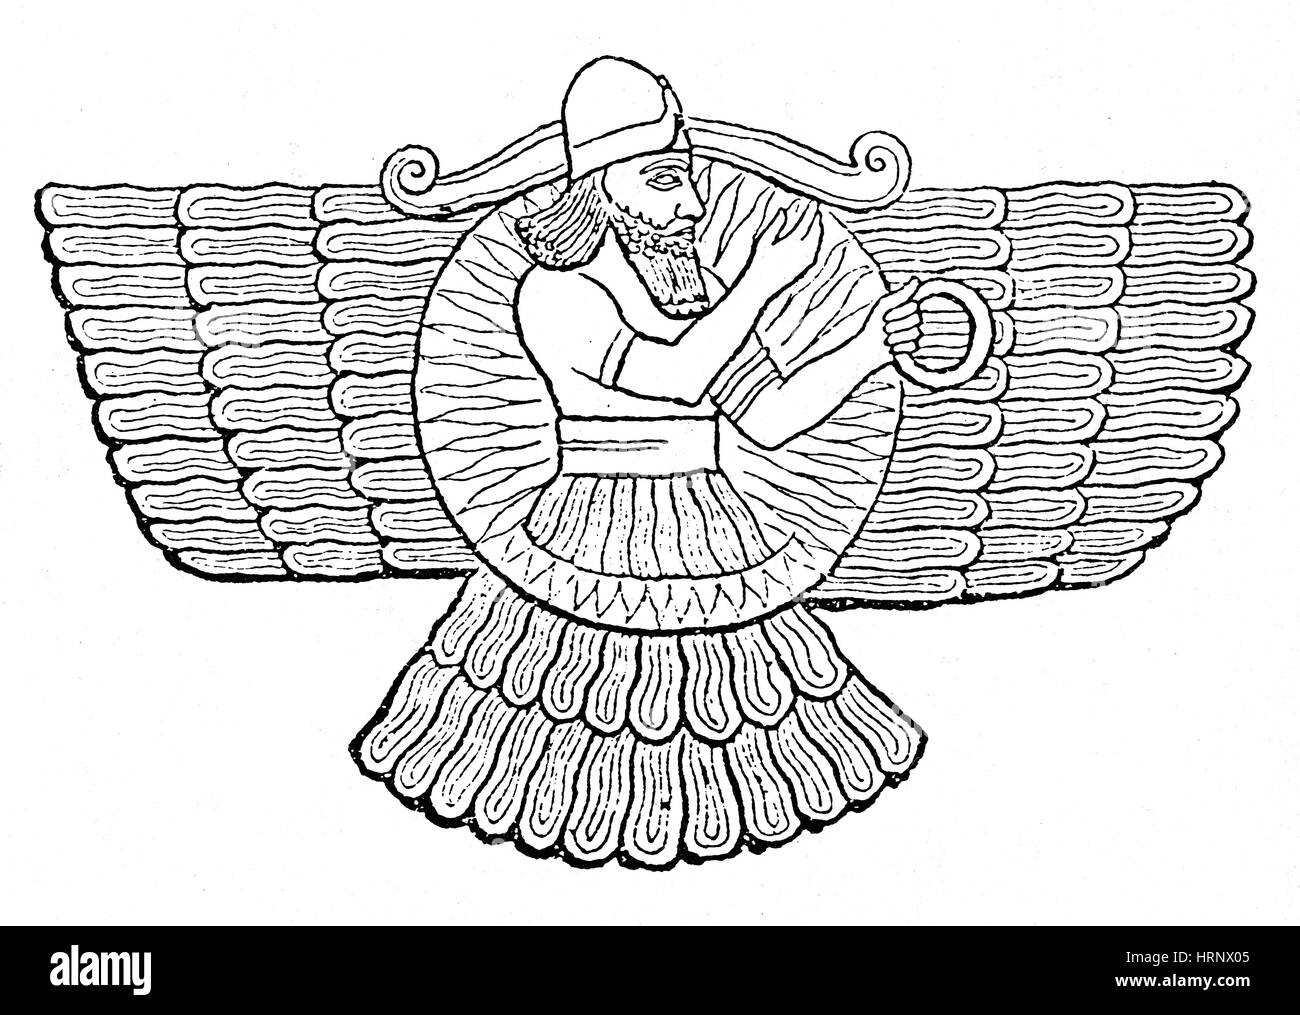 В четвертом моем походе бог ашшур. Бог Ашшур Ассирия. Шумерский Бог Ашшур. Ашшур Бог ассирийцев.